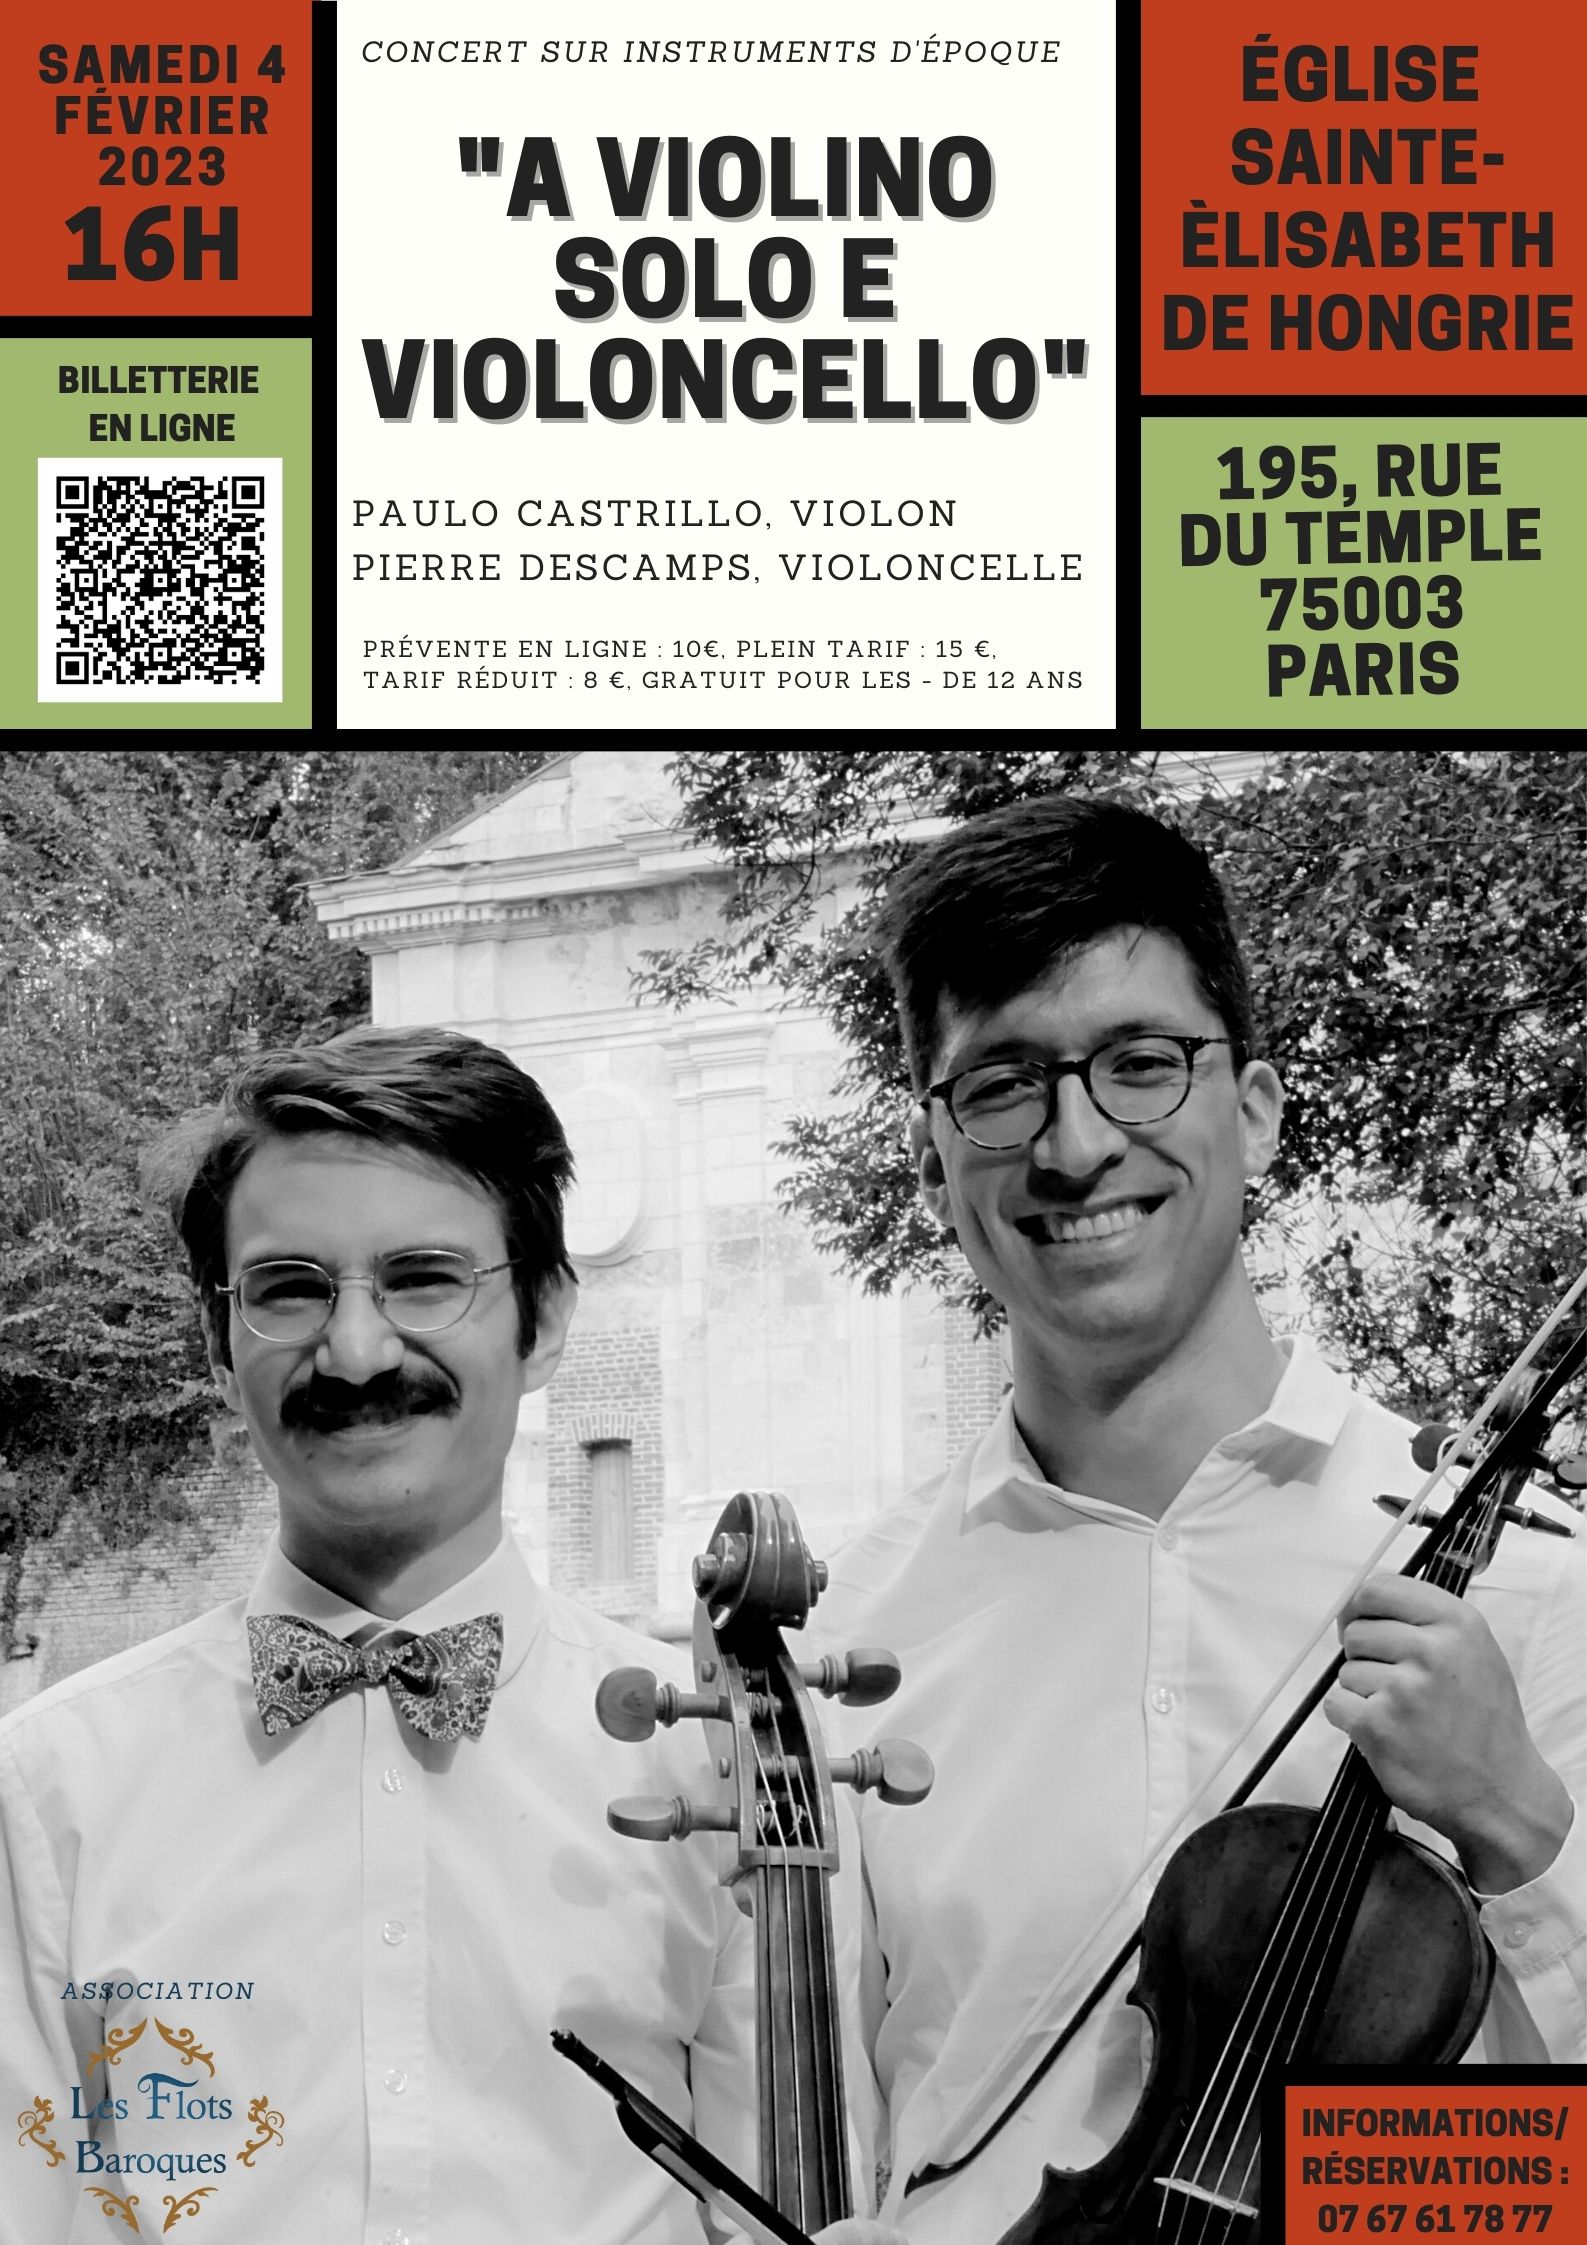 A violino solo e Violoncello 4 février 2023